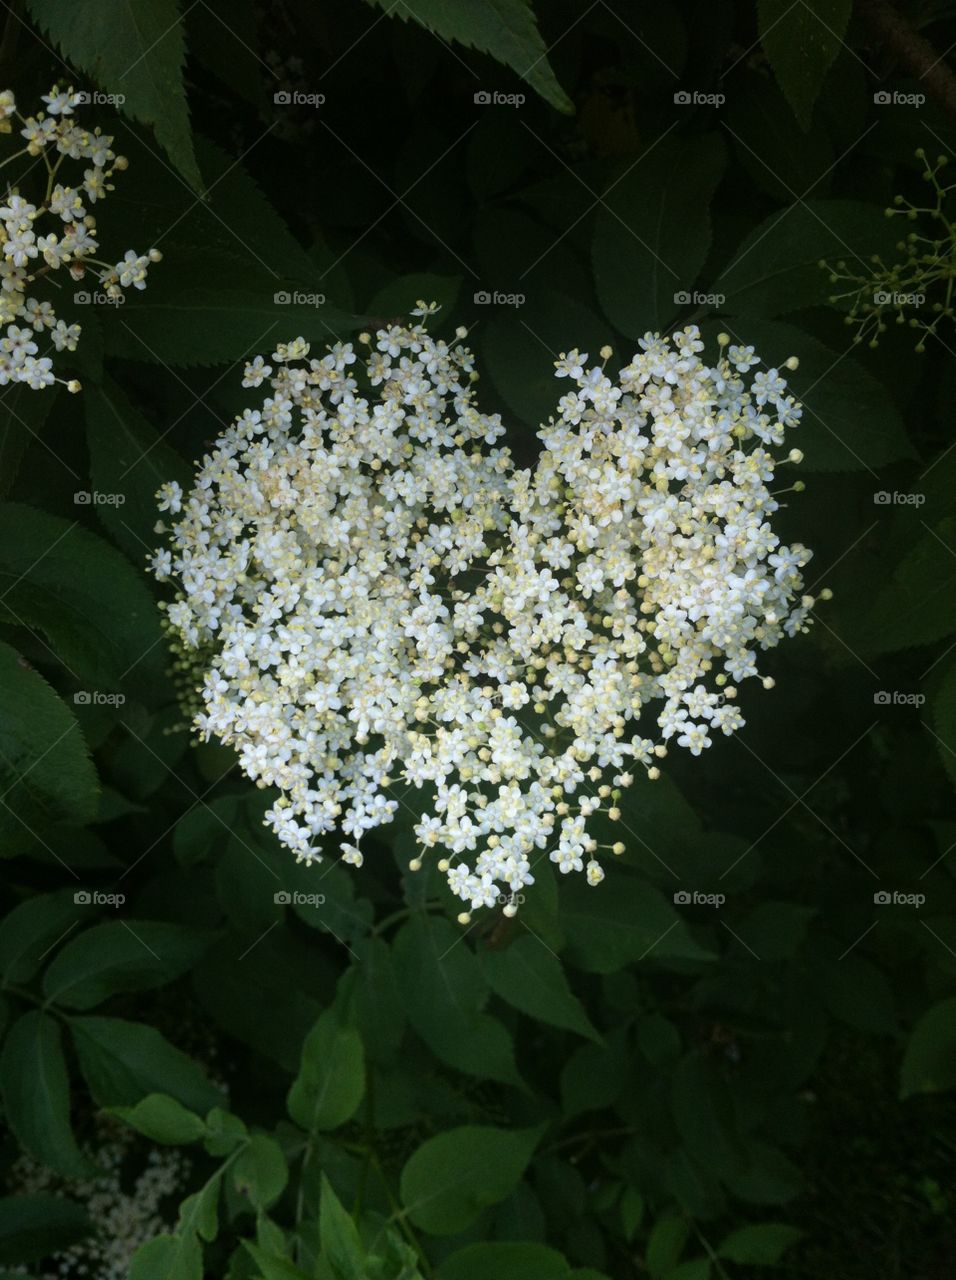 Elder flower heart